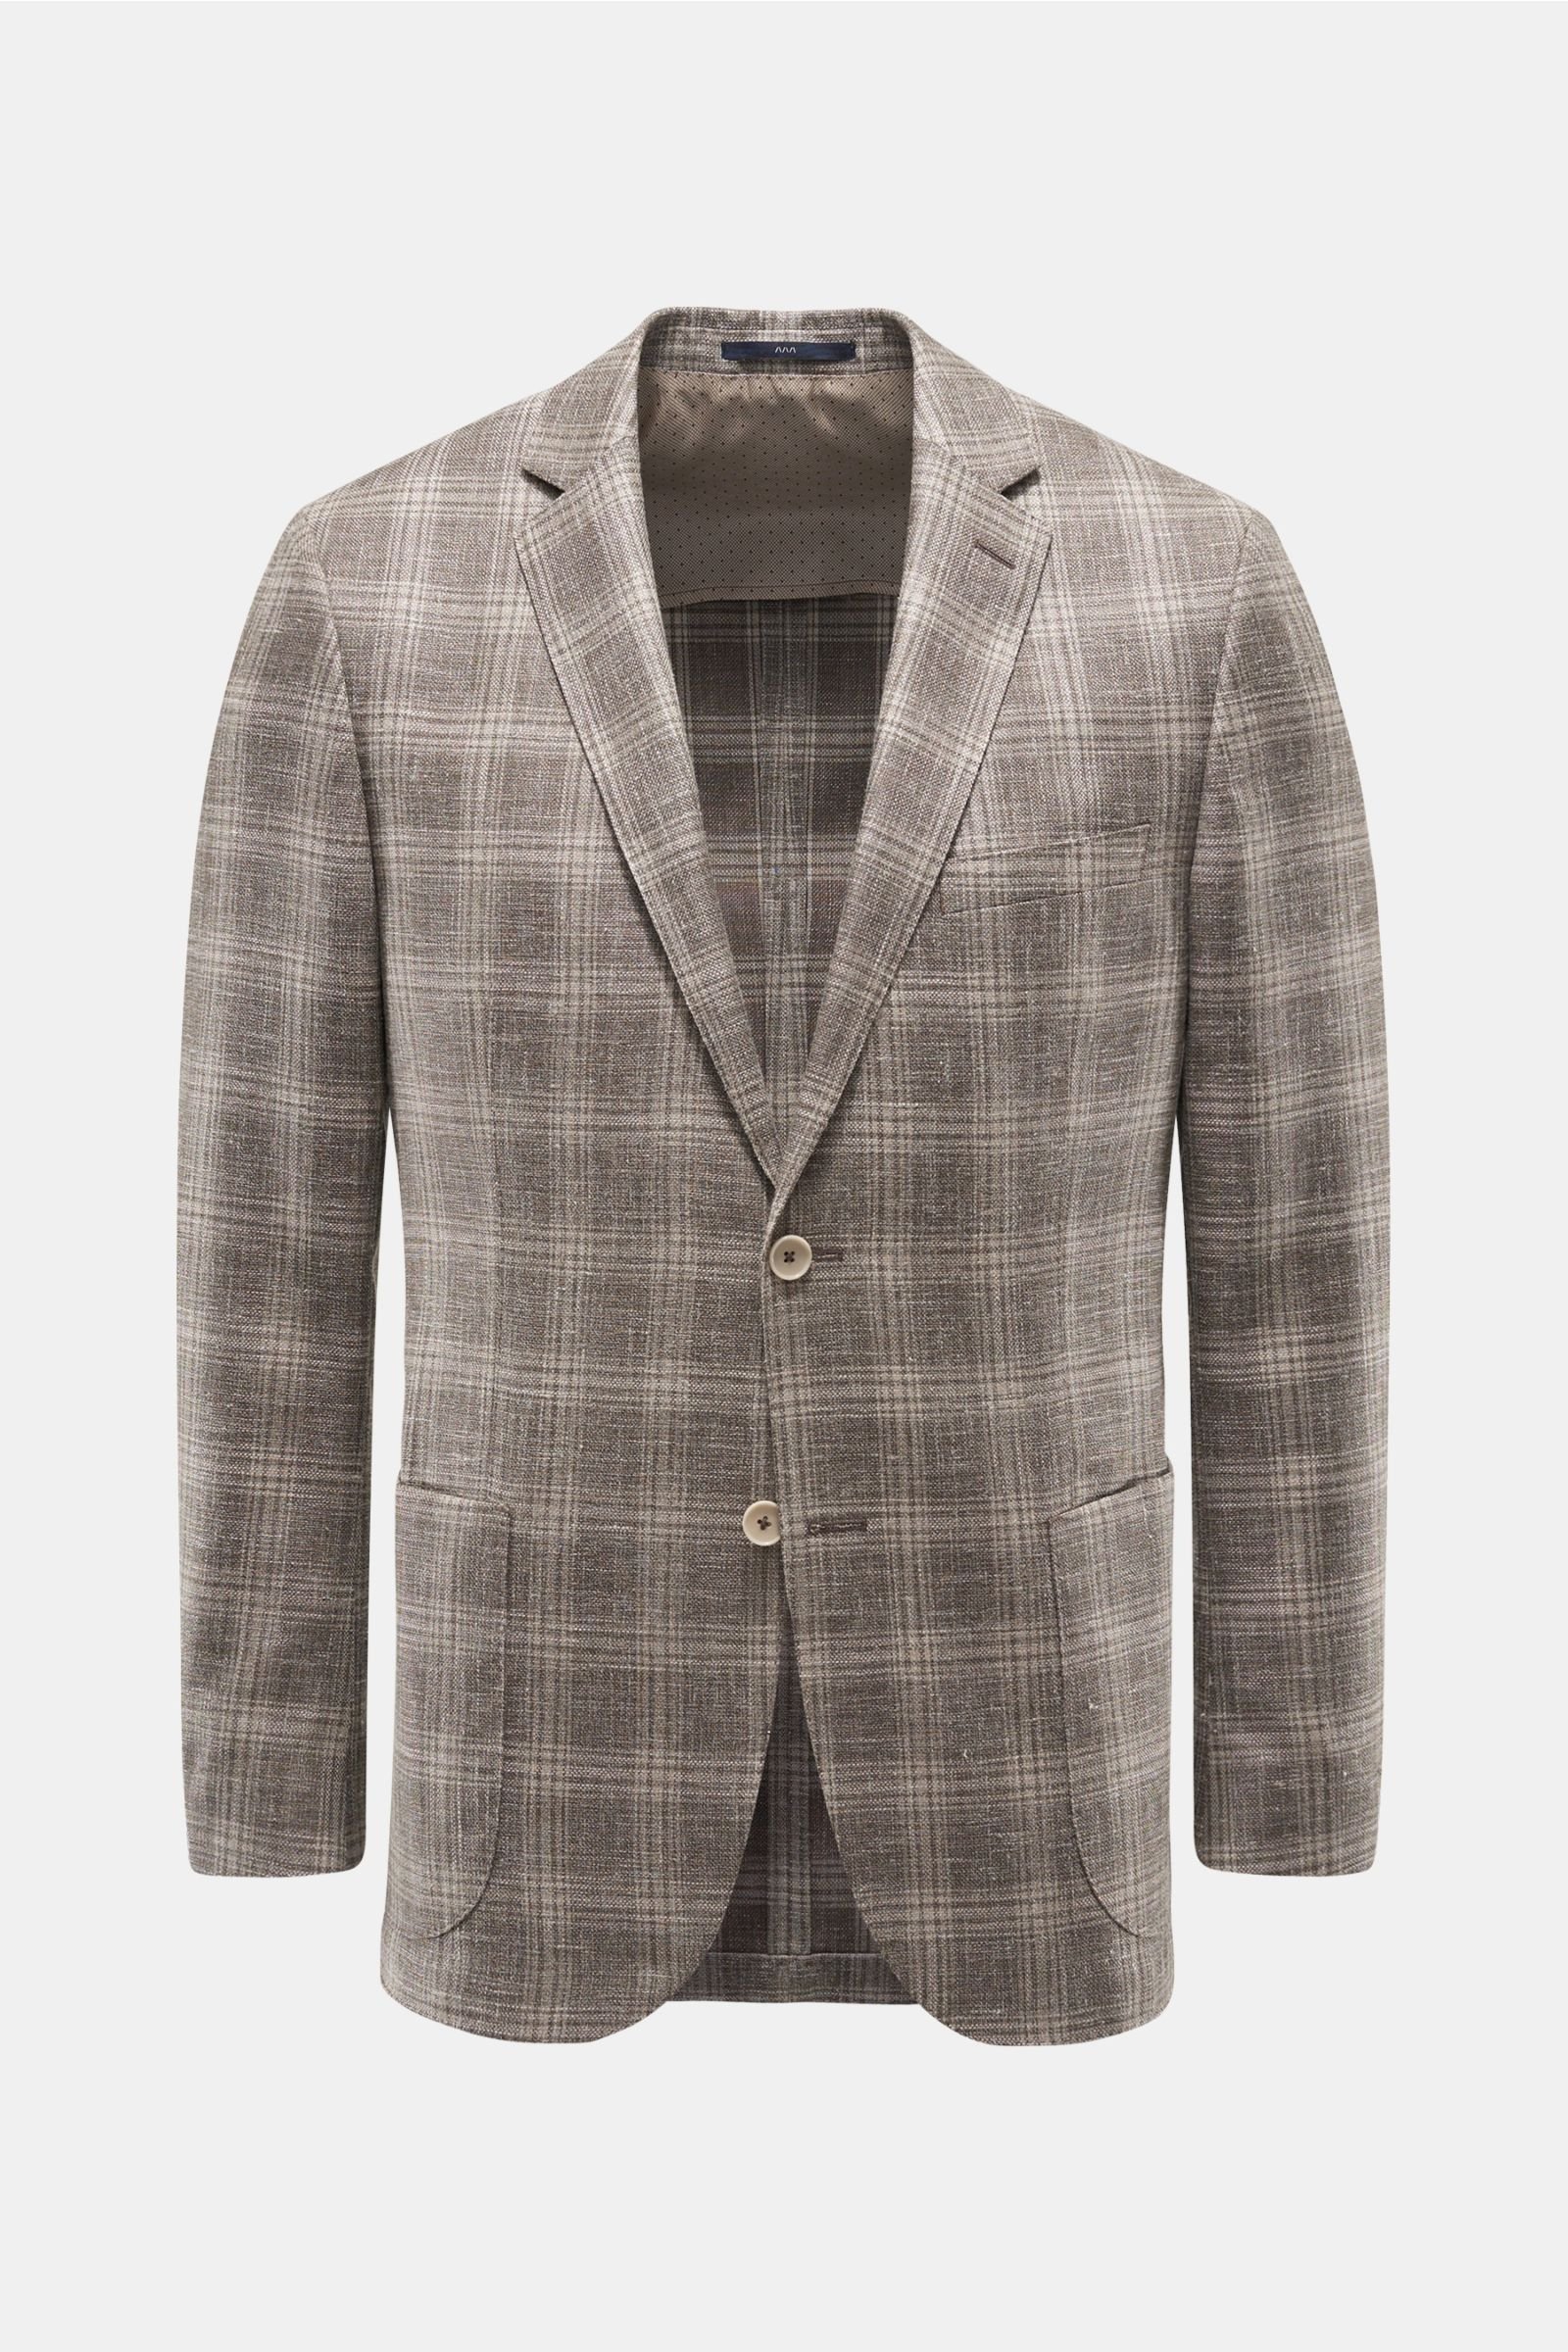 Smart-casual jacket 'Sendrik' grey-brown/beige checked